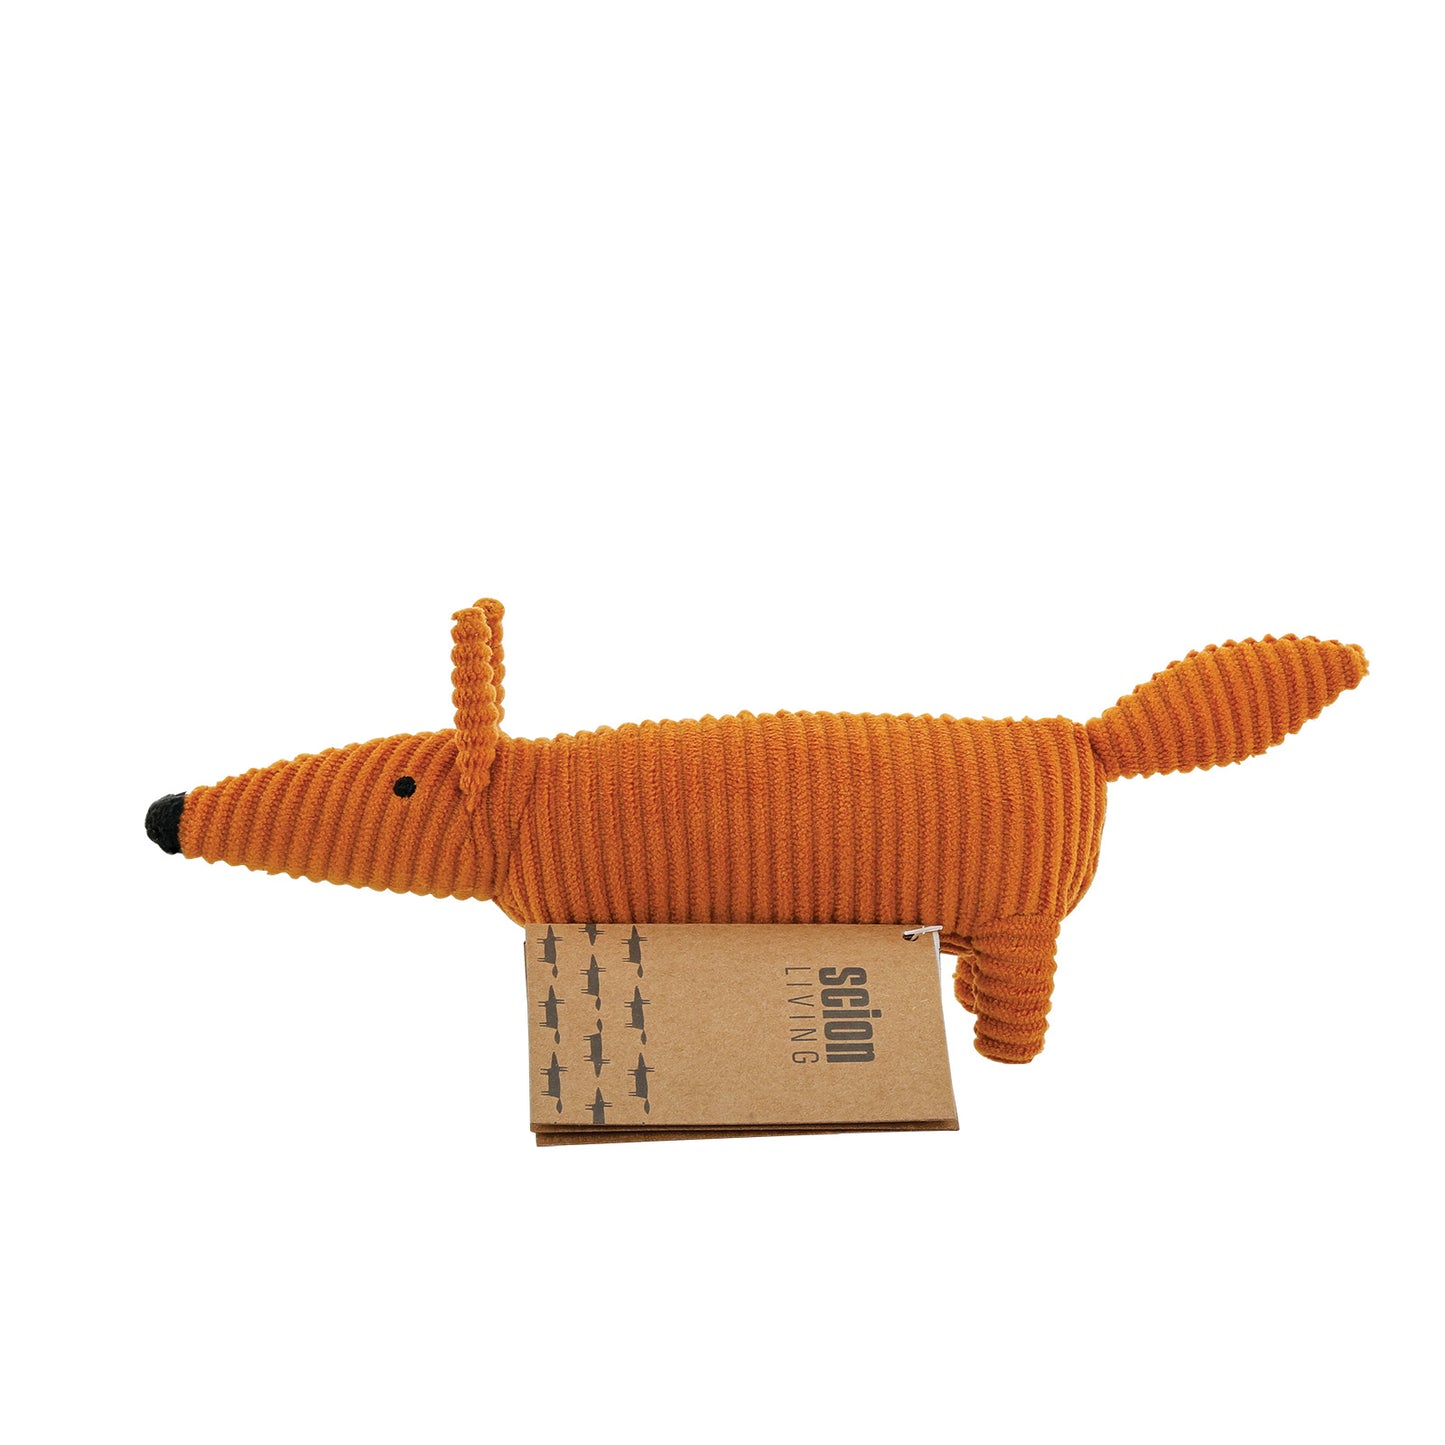 Scion Mr Fox Small Plush Toy